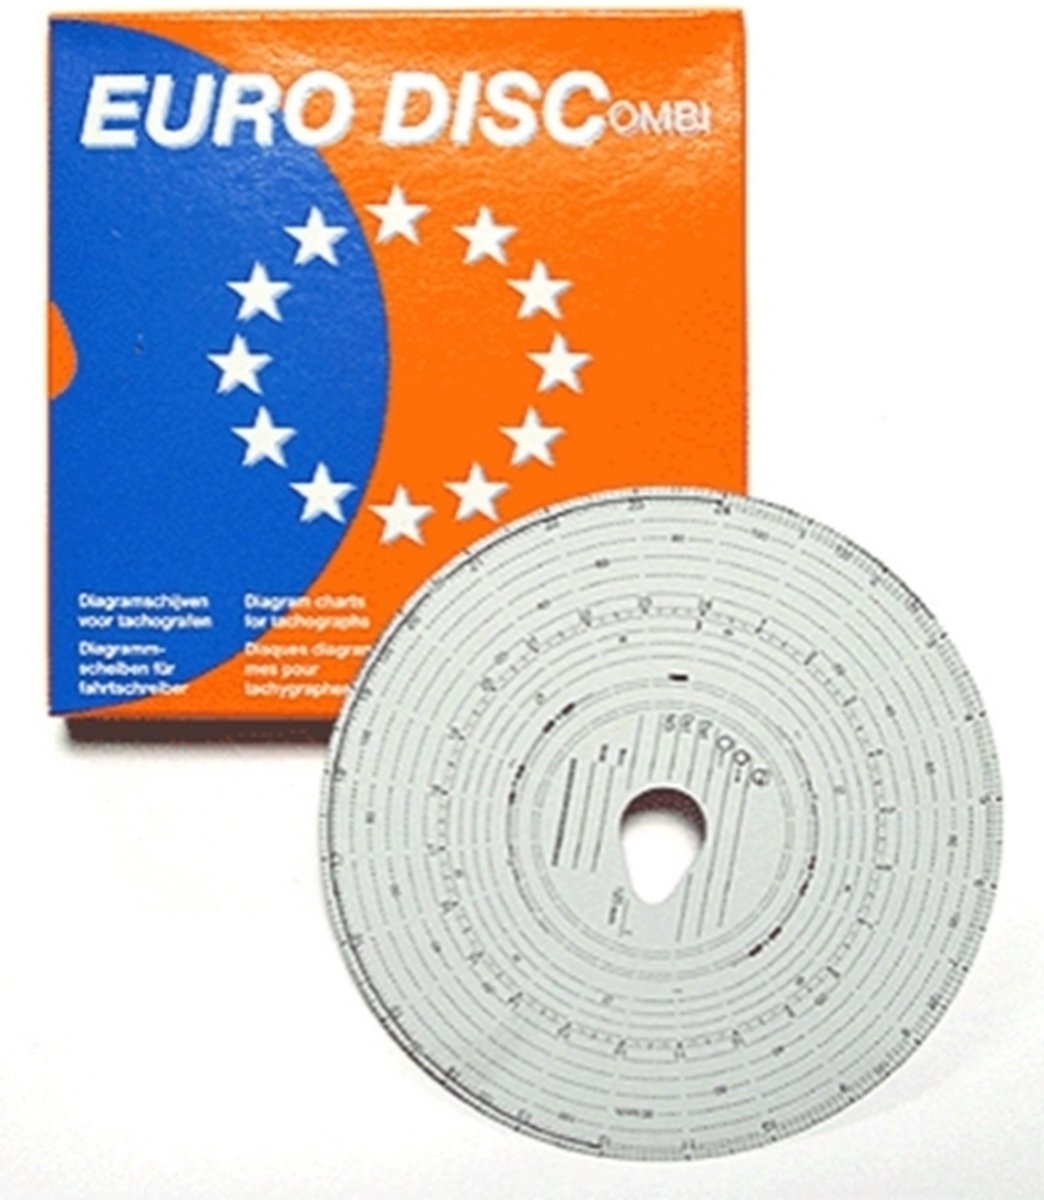 Euro Disc - EURO DISC 100 KM E ANALYS